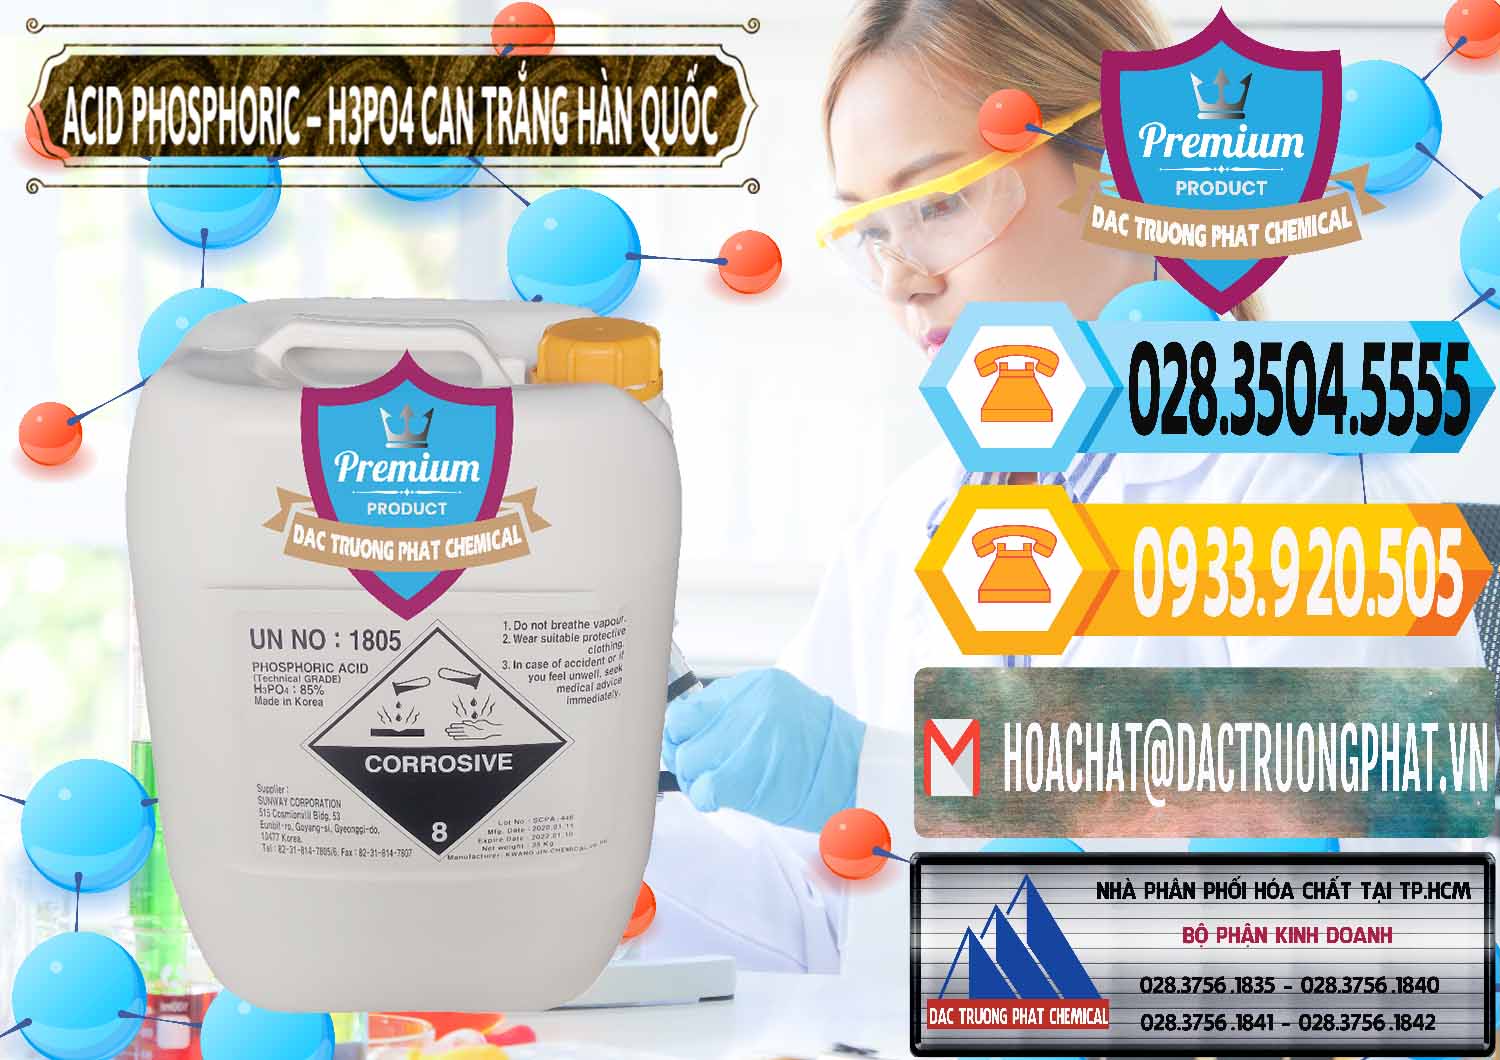 Công ty chuyên bán _ phân phối Acid Phosphoric - Axit Phosphoric H3PO4 Can Trắng Hàn Quốc Korea - 0017 - Đơn vị phân phối & bán hóa chất tại TP.HCM - hoachattayrua.net